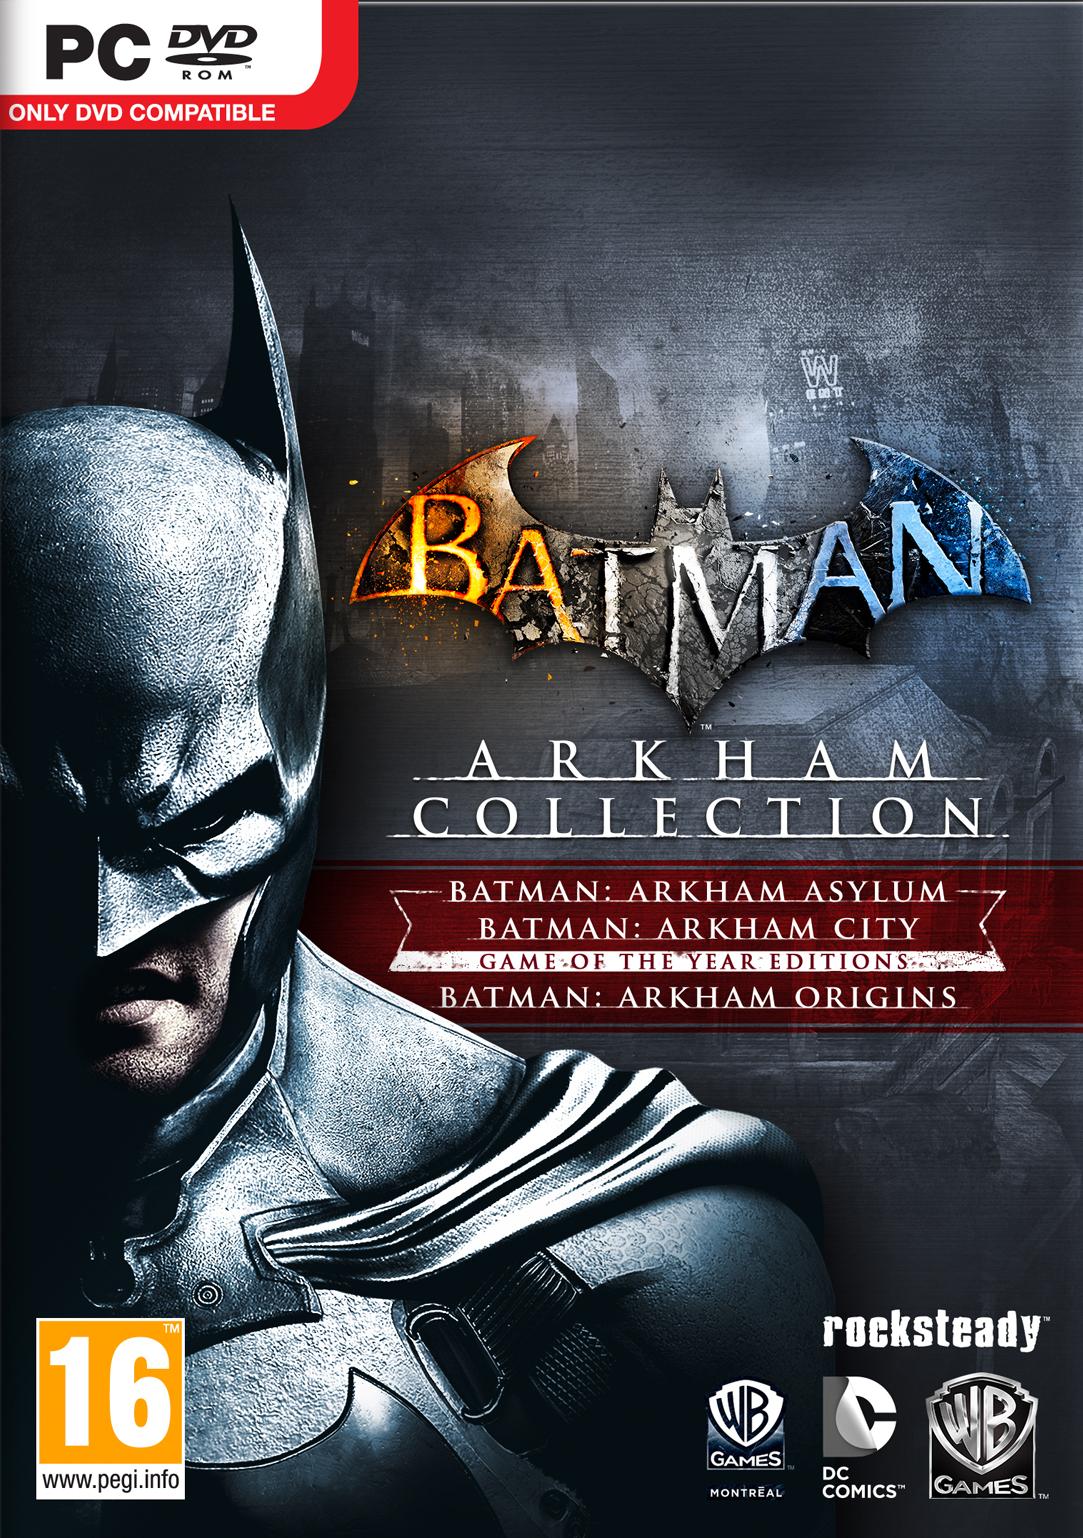 Batman : Arkham Collection